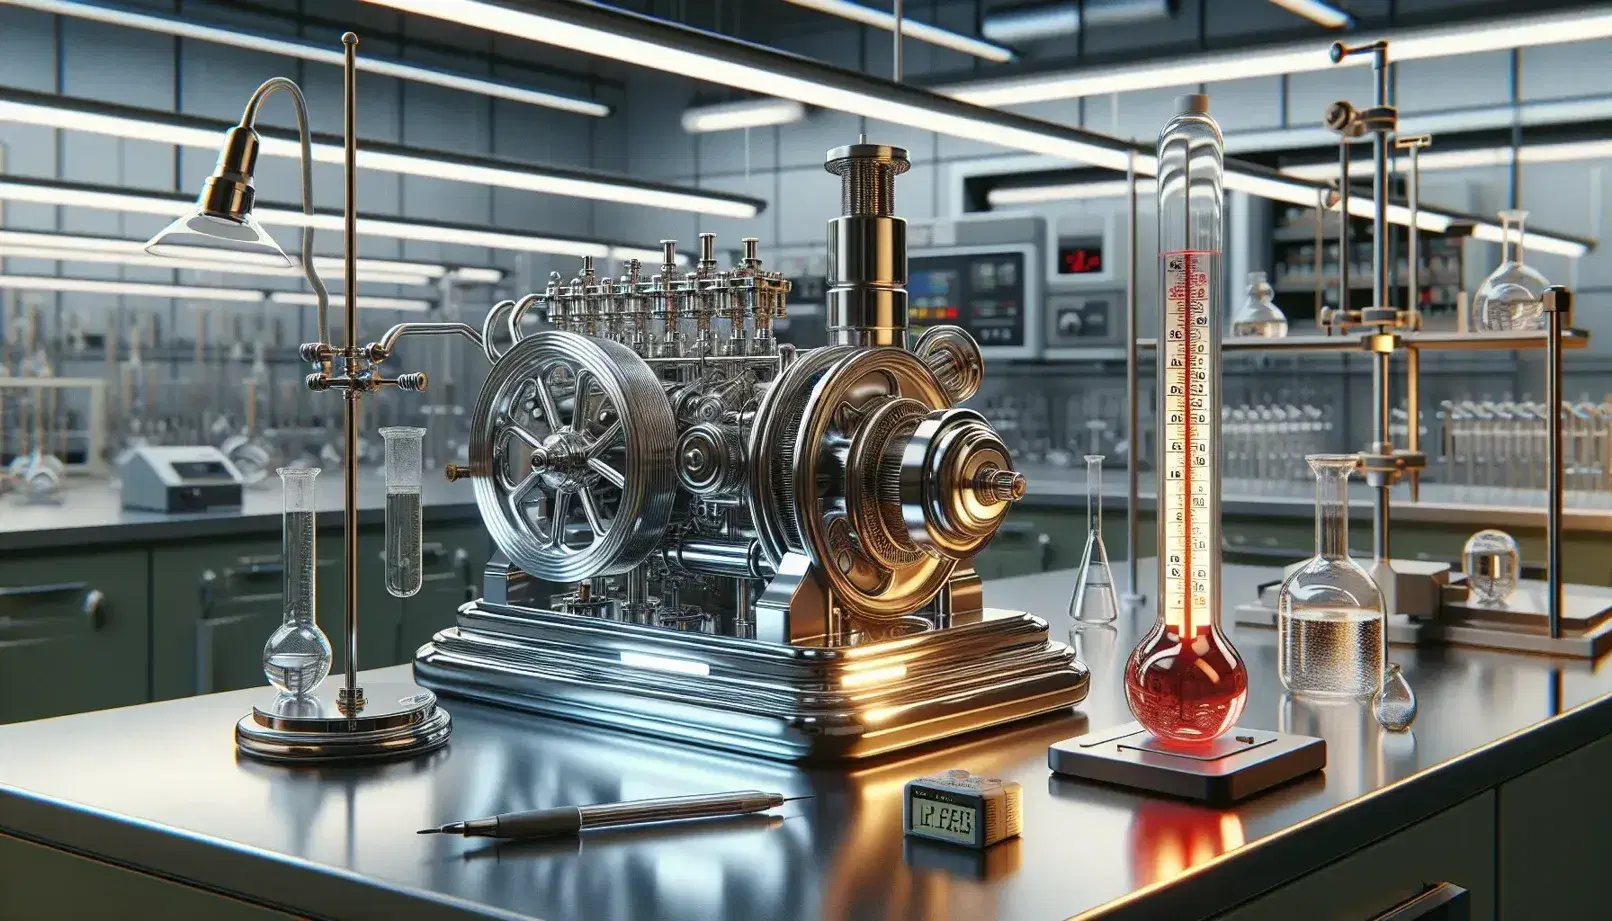 Laboratorio científico con motor Stirling metálico, termómetro de vidrio, balanza de precisión y matraz Erlenmeyer en mesa de laboratorio.